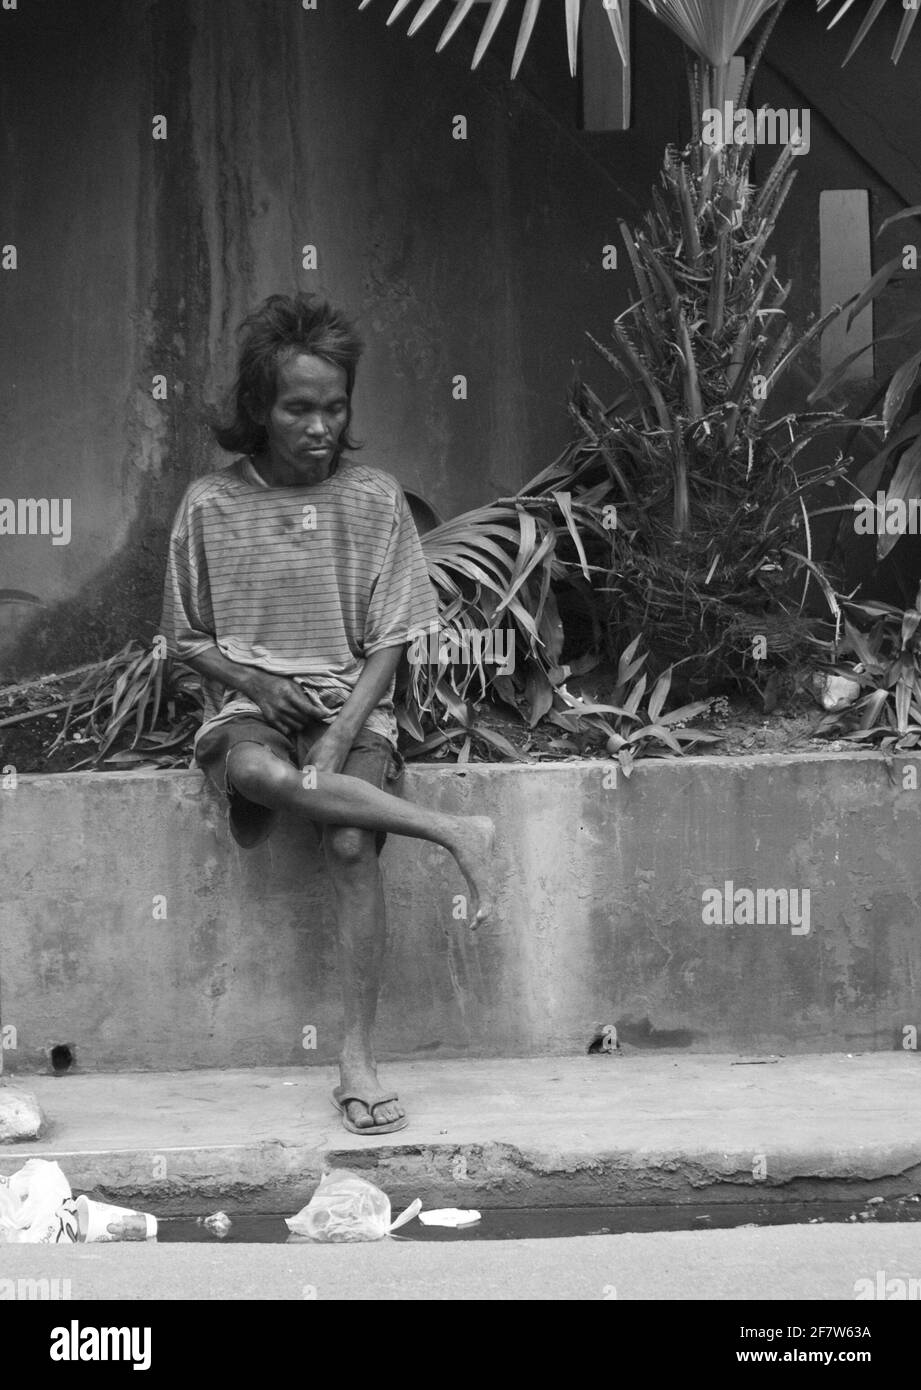 CEBU, PHILIPPINEN - 19. Jan 2009: Ein Straßenbewohner sitzt auf einem Blumentopf entlang einer belebten Straße in Cebu Stockfoto